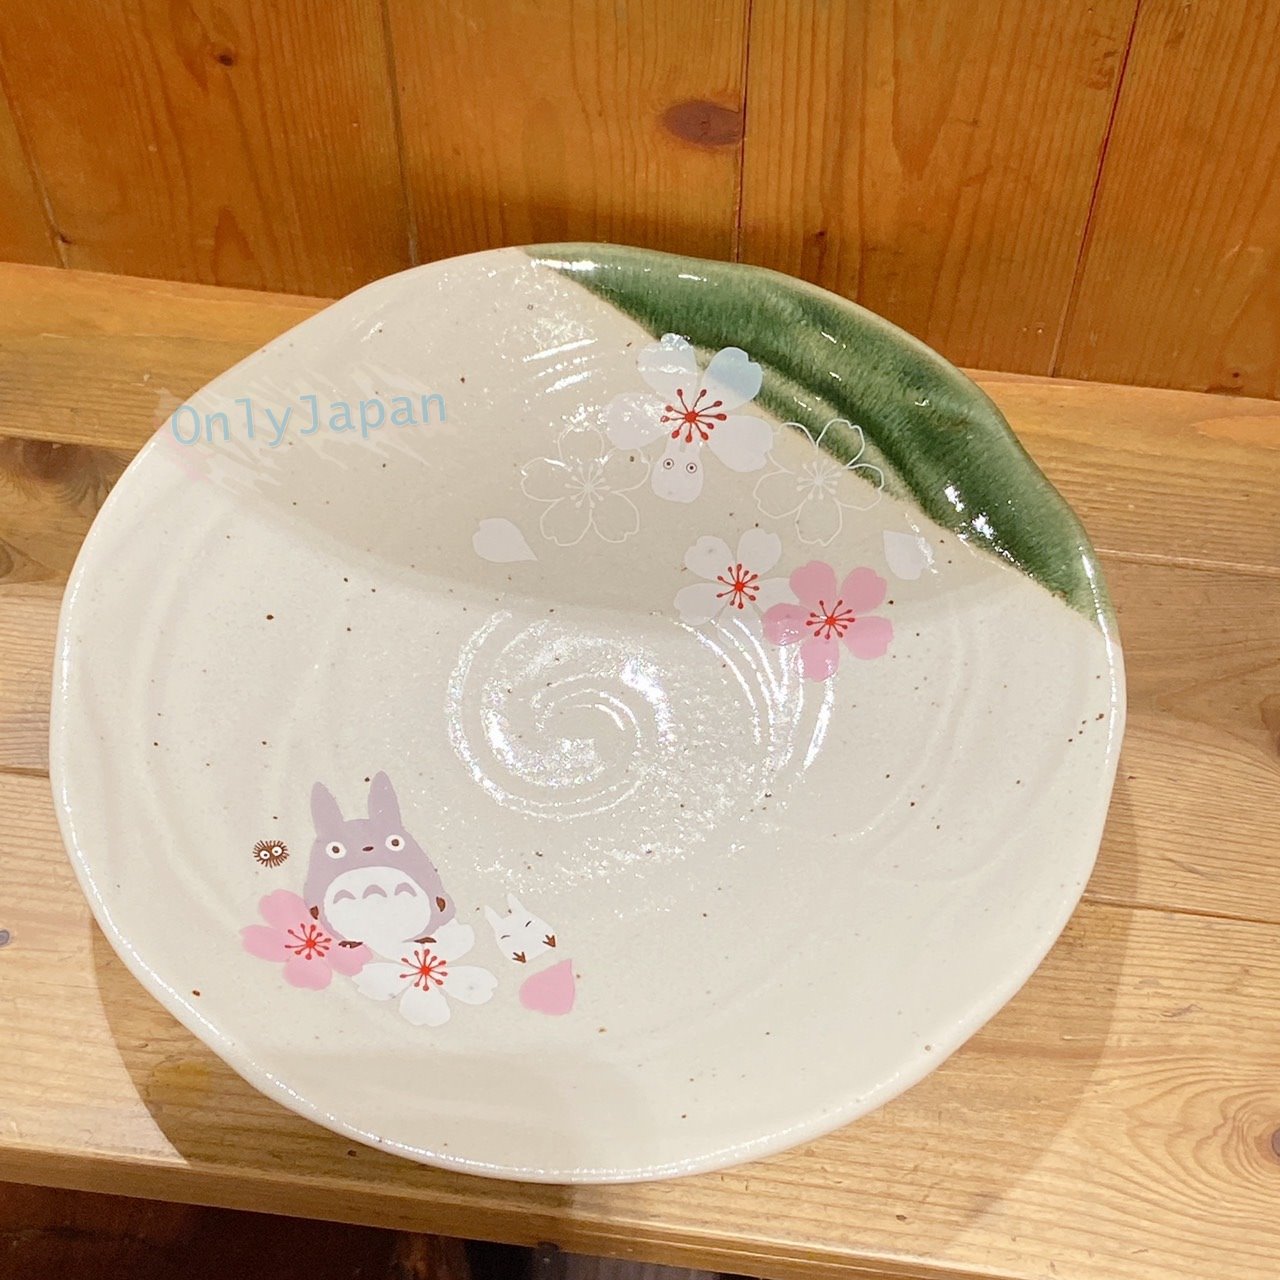 真愛日本 龍貓美濃燒皿 日本製深皿 美濃燒深皿 陶深皿 龍貓和風櫻花 美濃燒深皿 龍貓盤 盤皿 小盤子